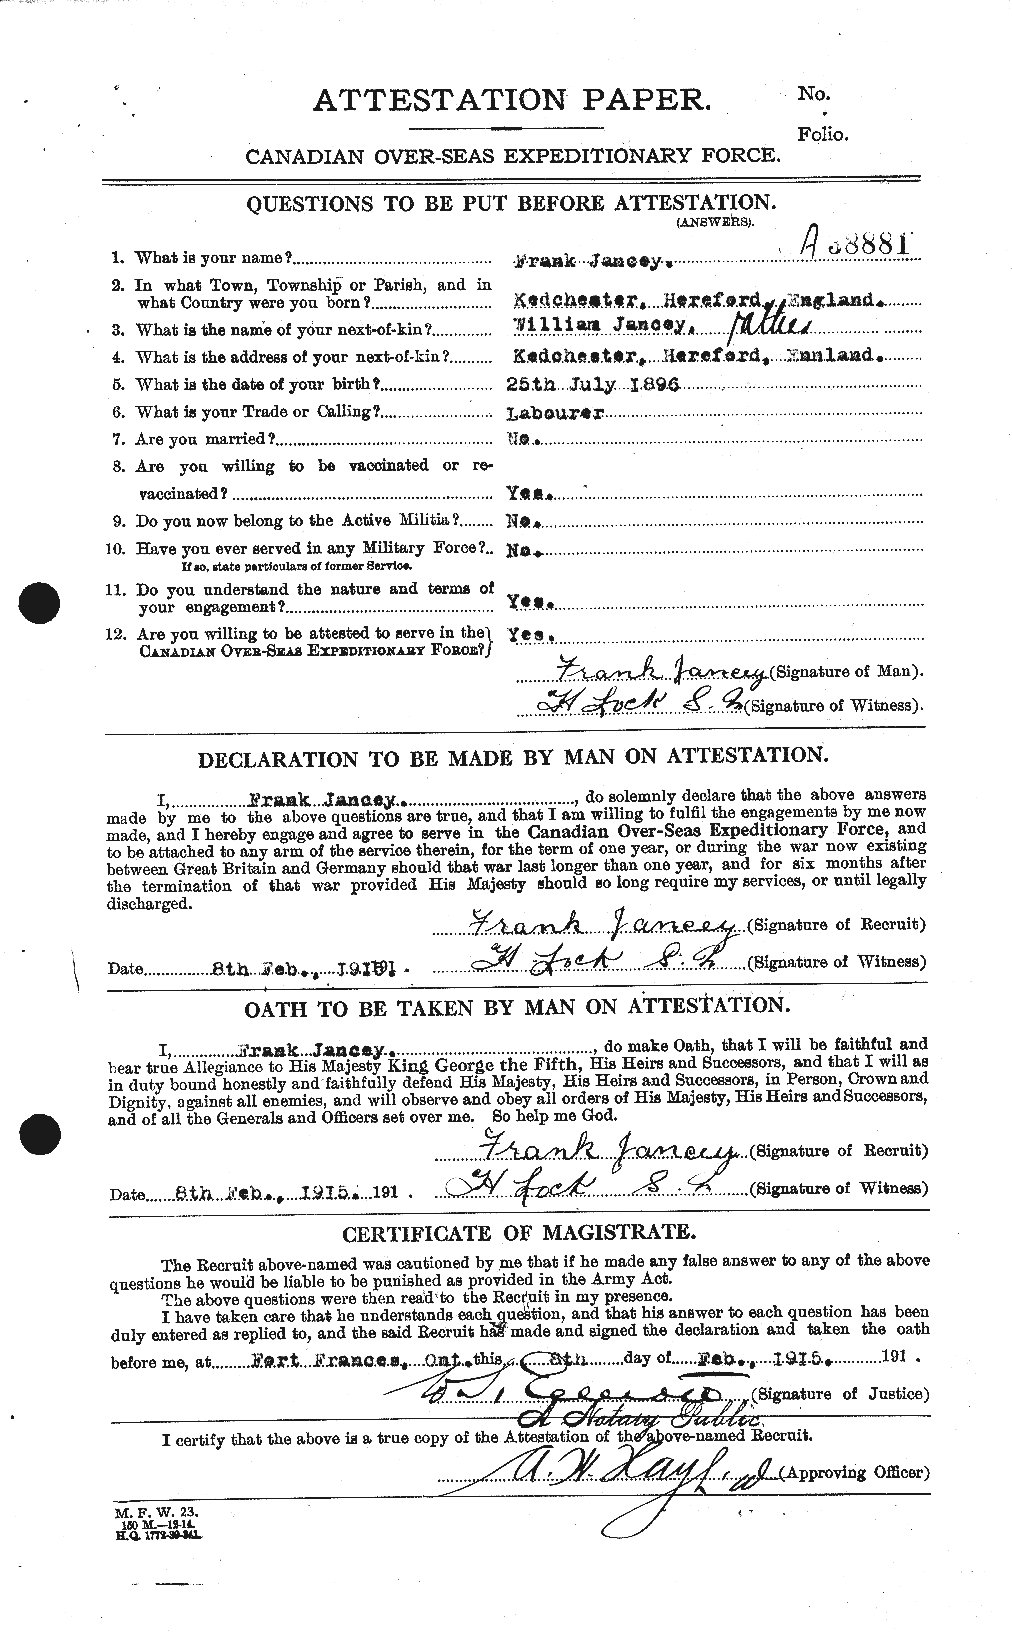 Dossiers du Personnel de la Première Guerre mondiale - CEC 415336a